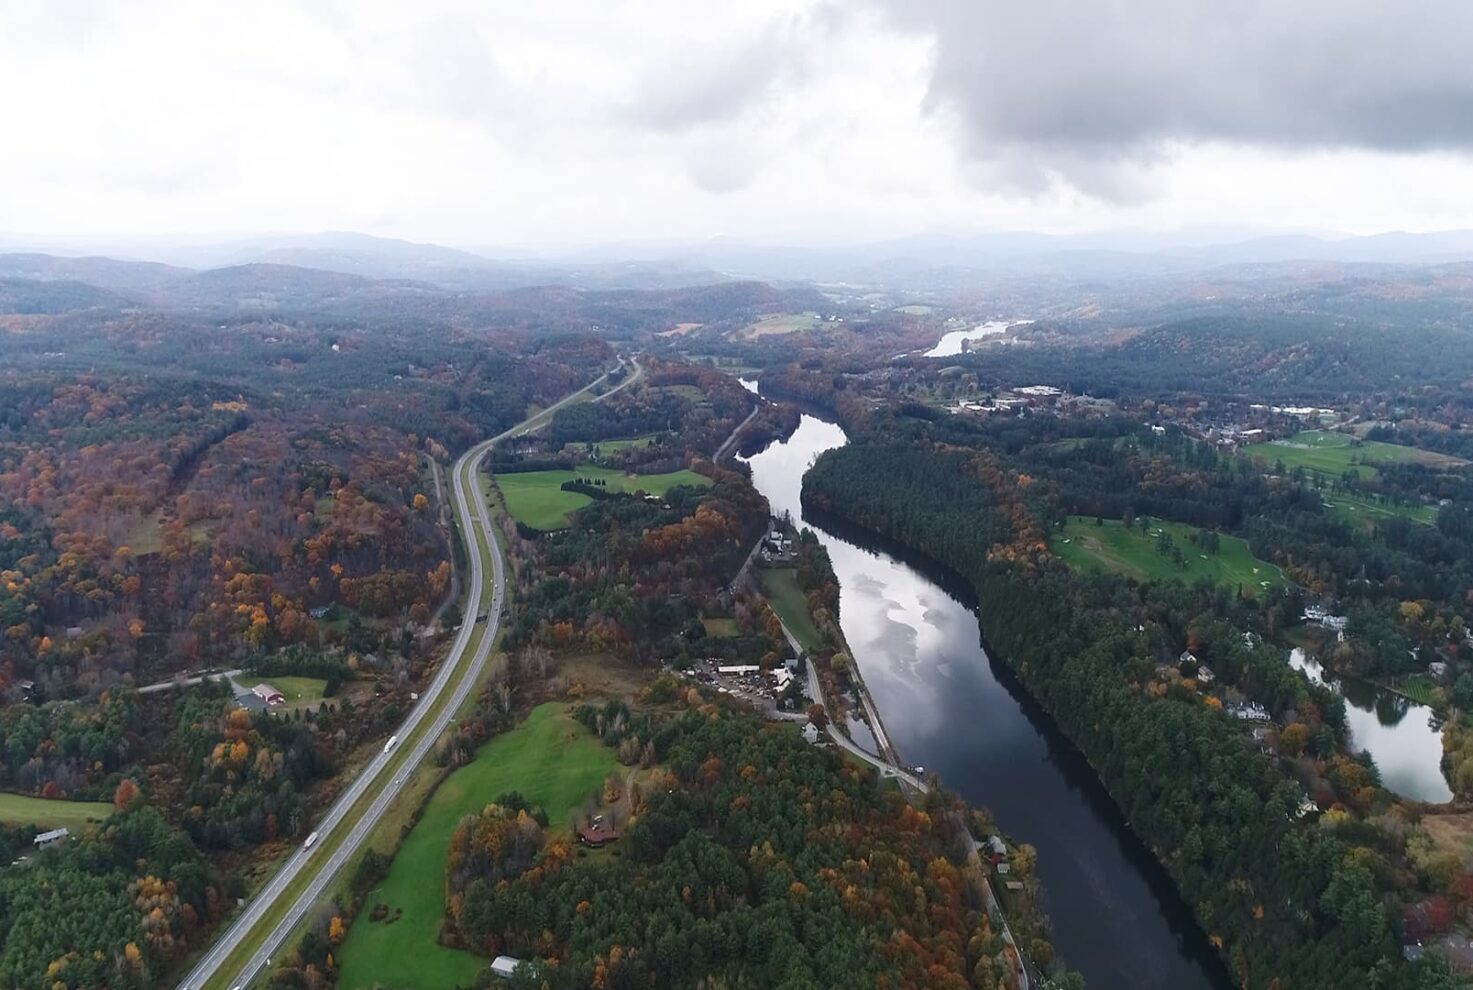 Vermont landscape